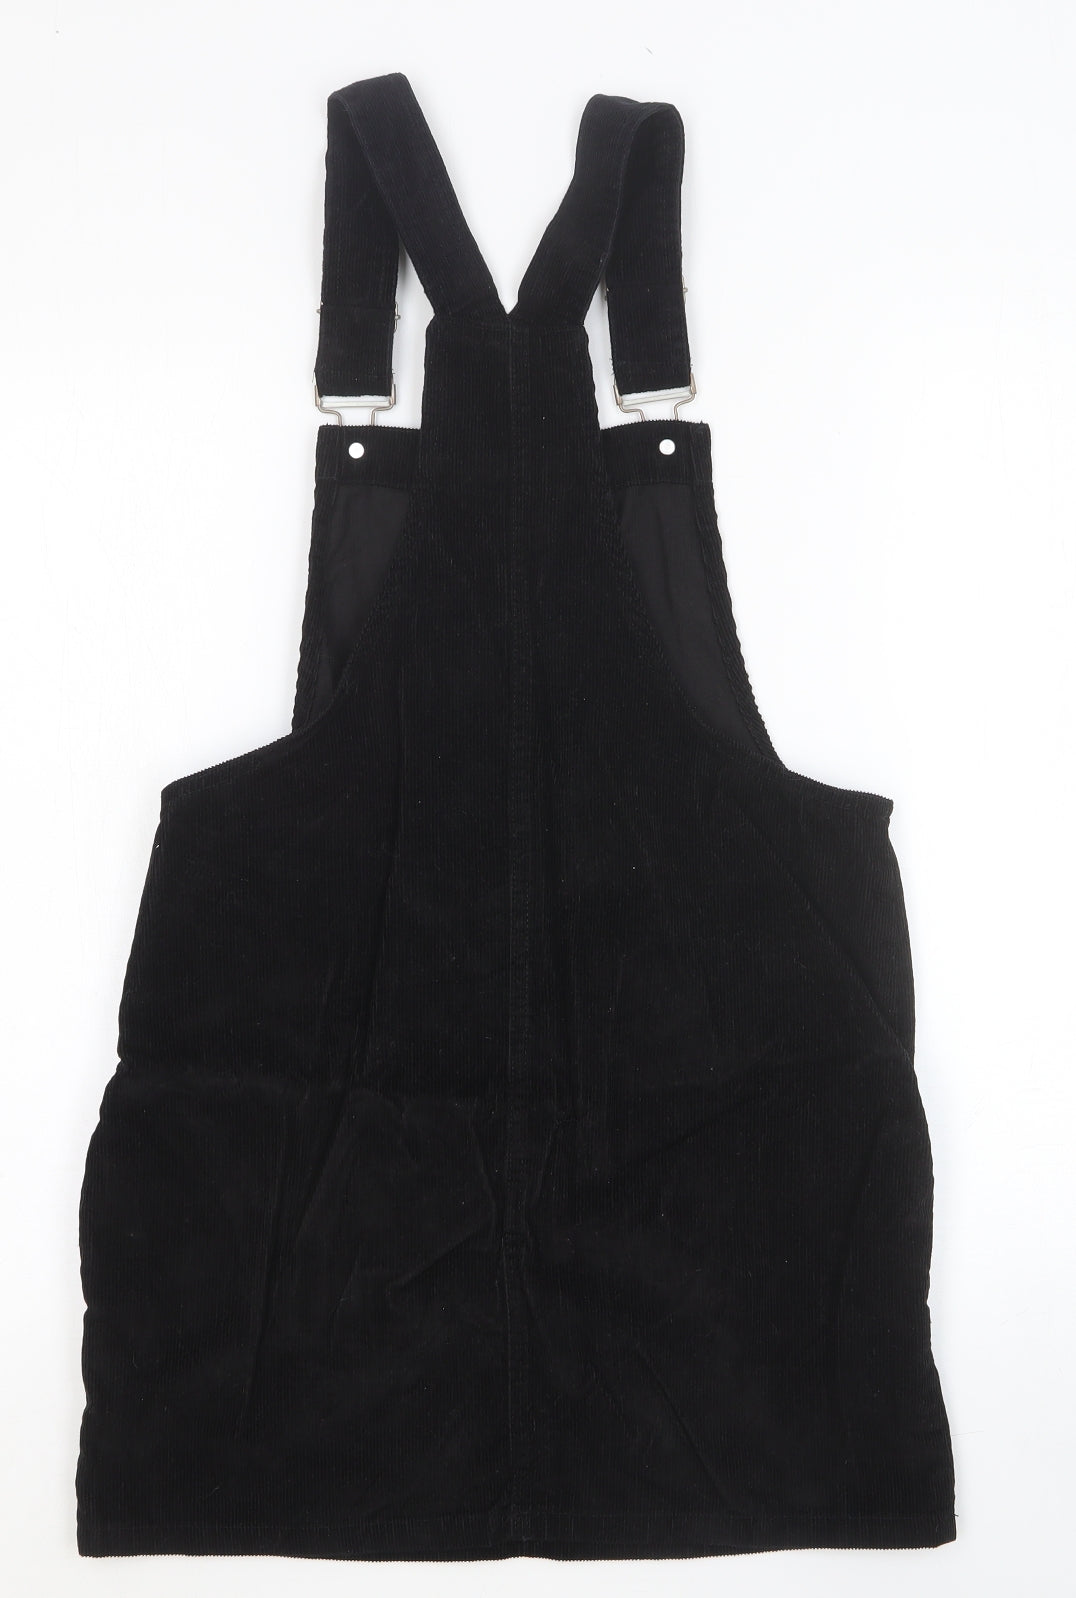 Denim & Co. Womens Black Floral Cotton Pencil Dress Size 10 Square Neck Buckle